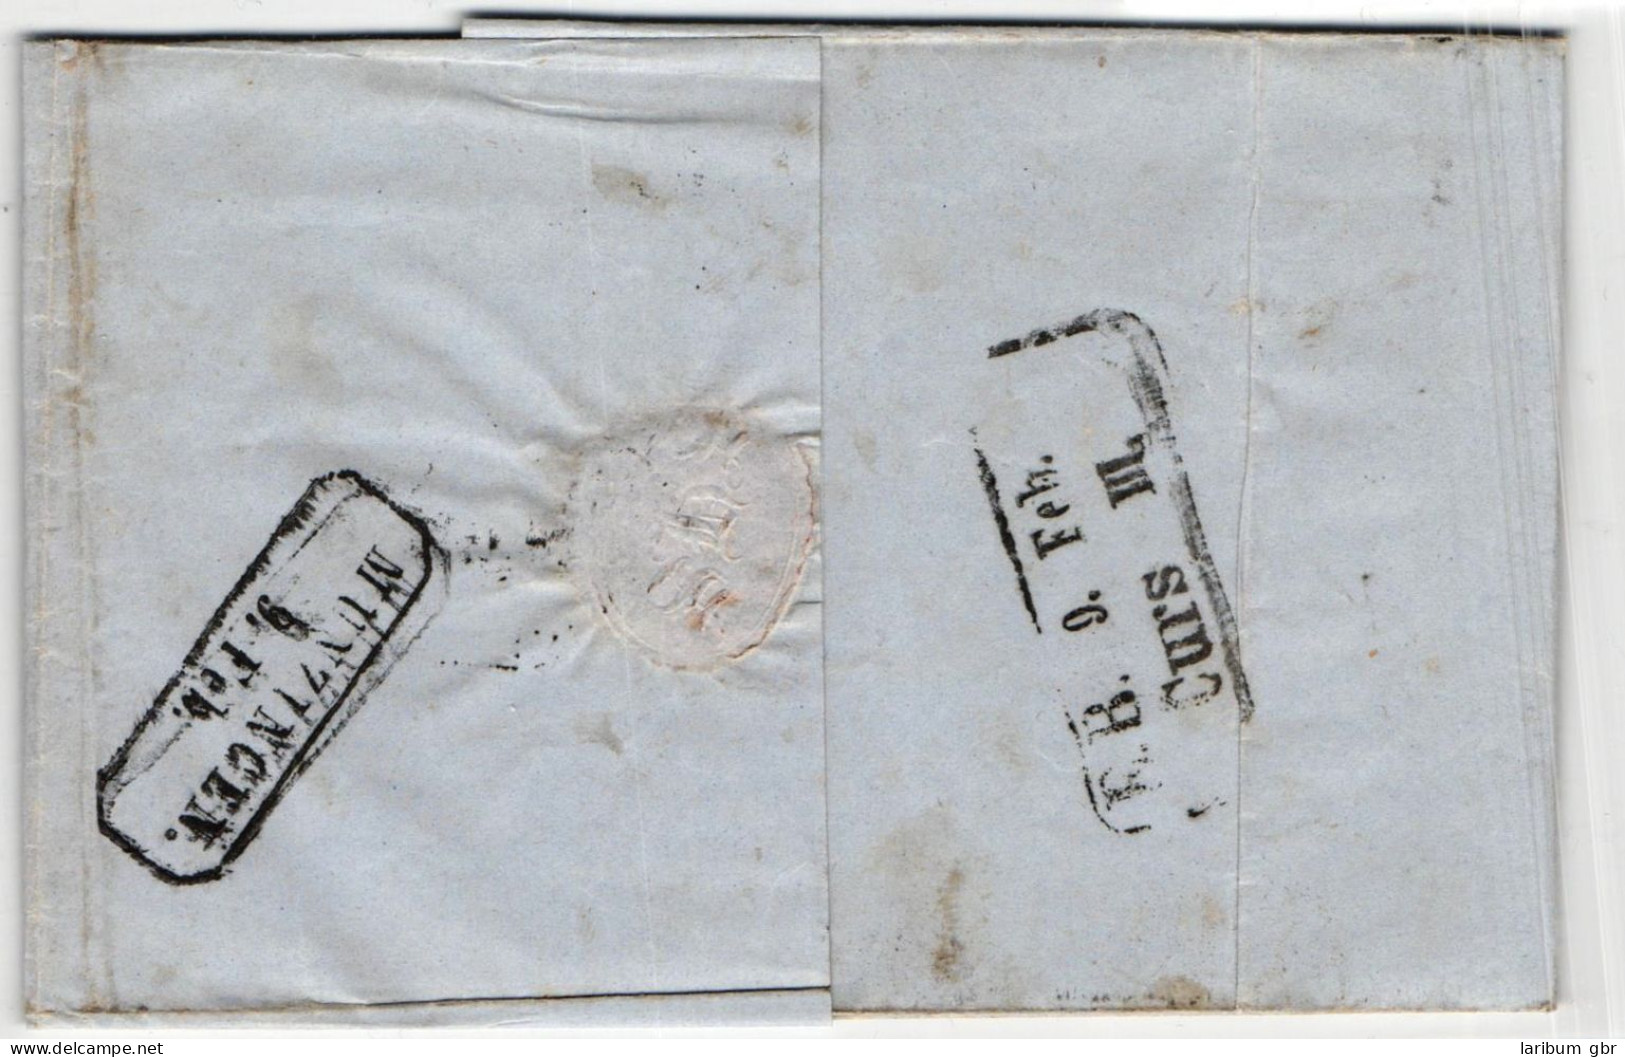 Baden 7 Auf Brief N 5 24 "Karlsruhe" Mit Eisenbahn "Curs"-Stempel III #JS804 - Lettres & Documents